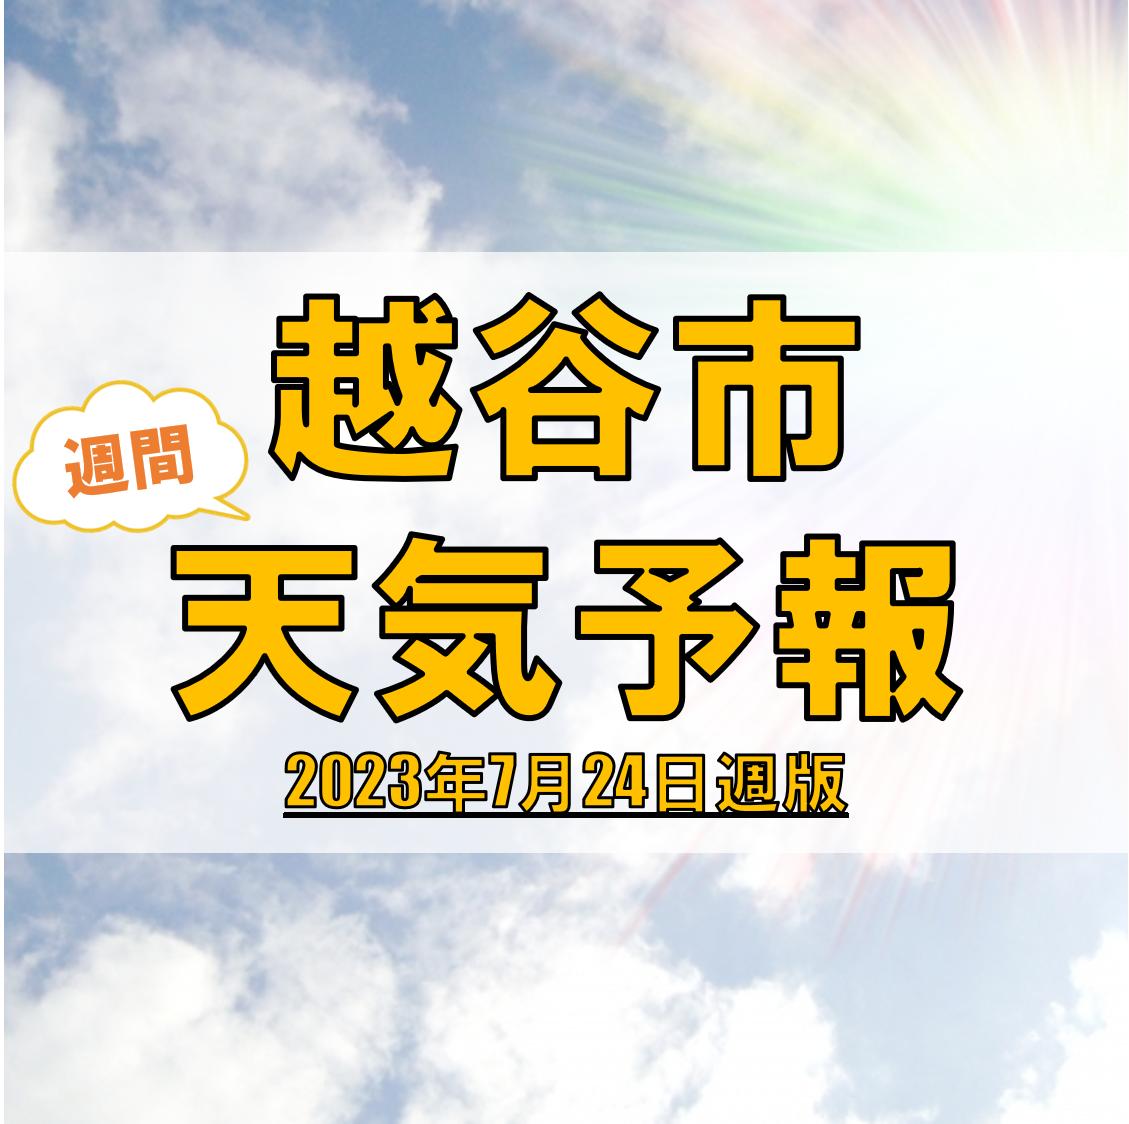 越谷市の天気 週間予報【2023年7月24日週】